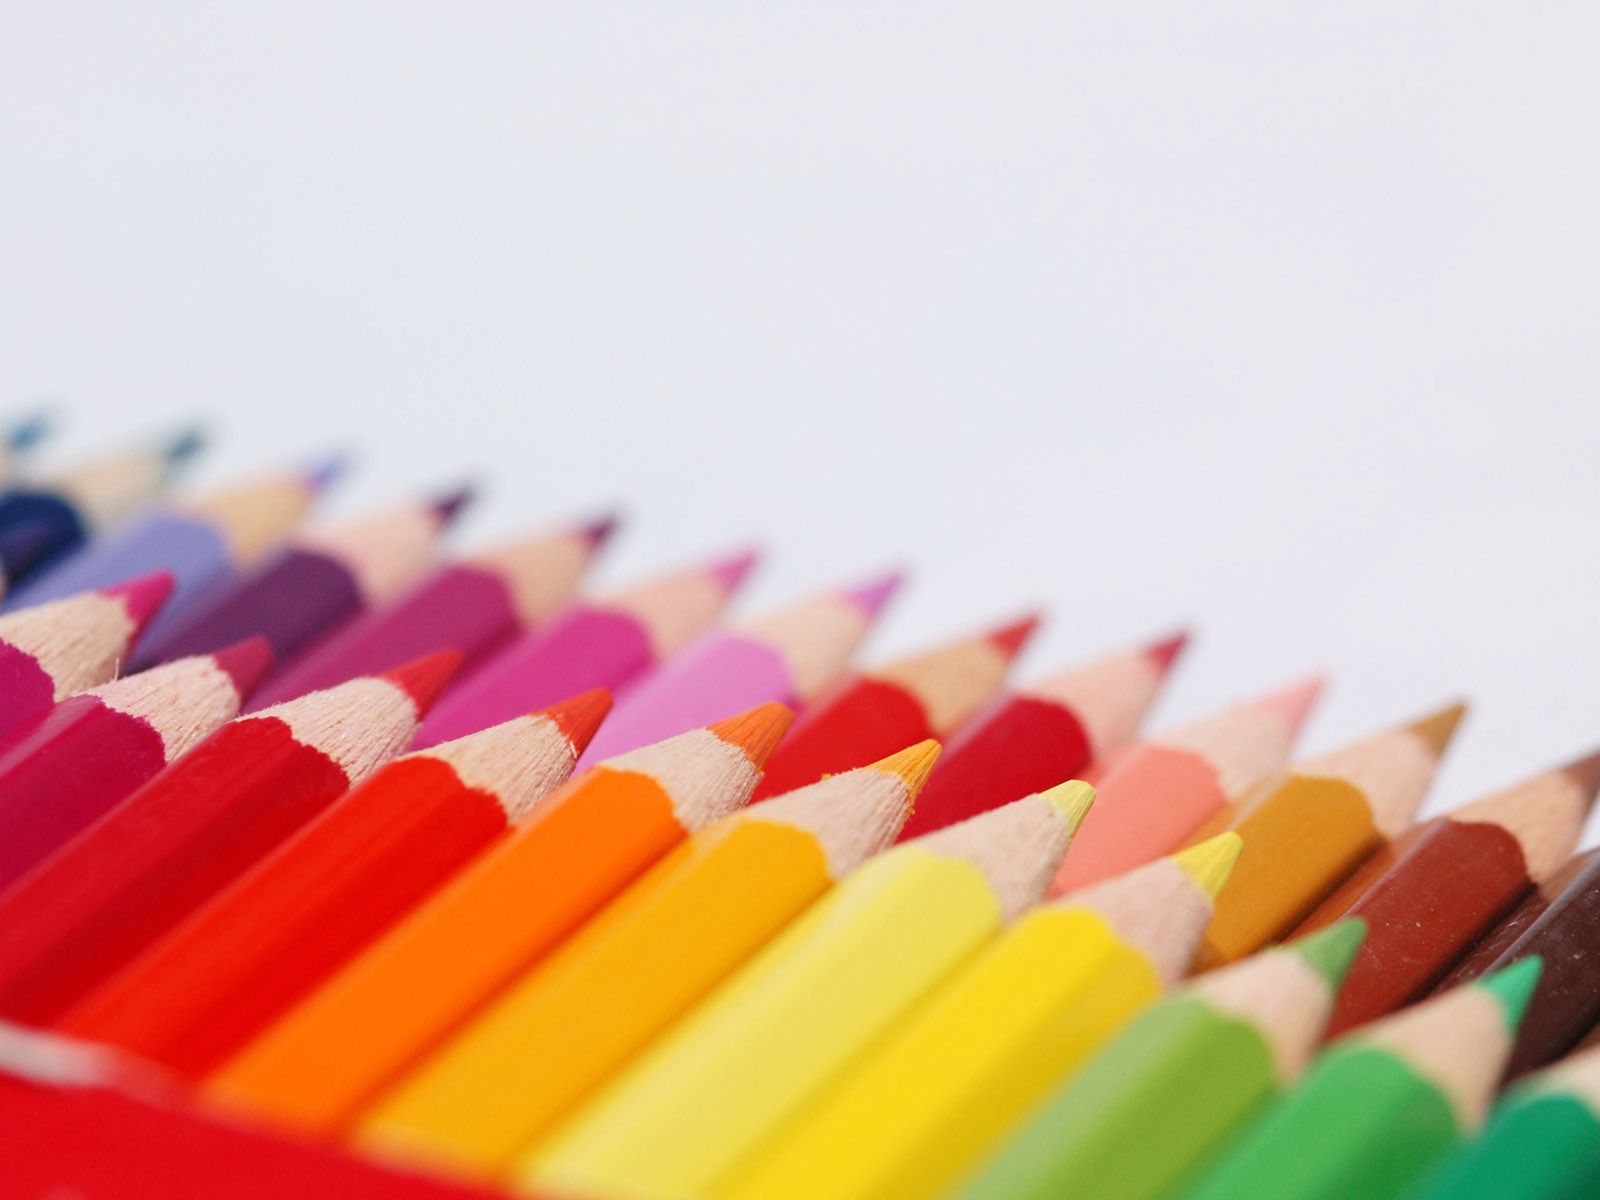 Colored pencils - Pencils Wallpaper (22186701) - Fanpop